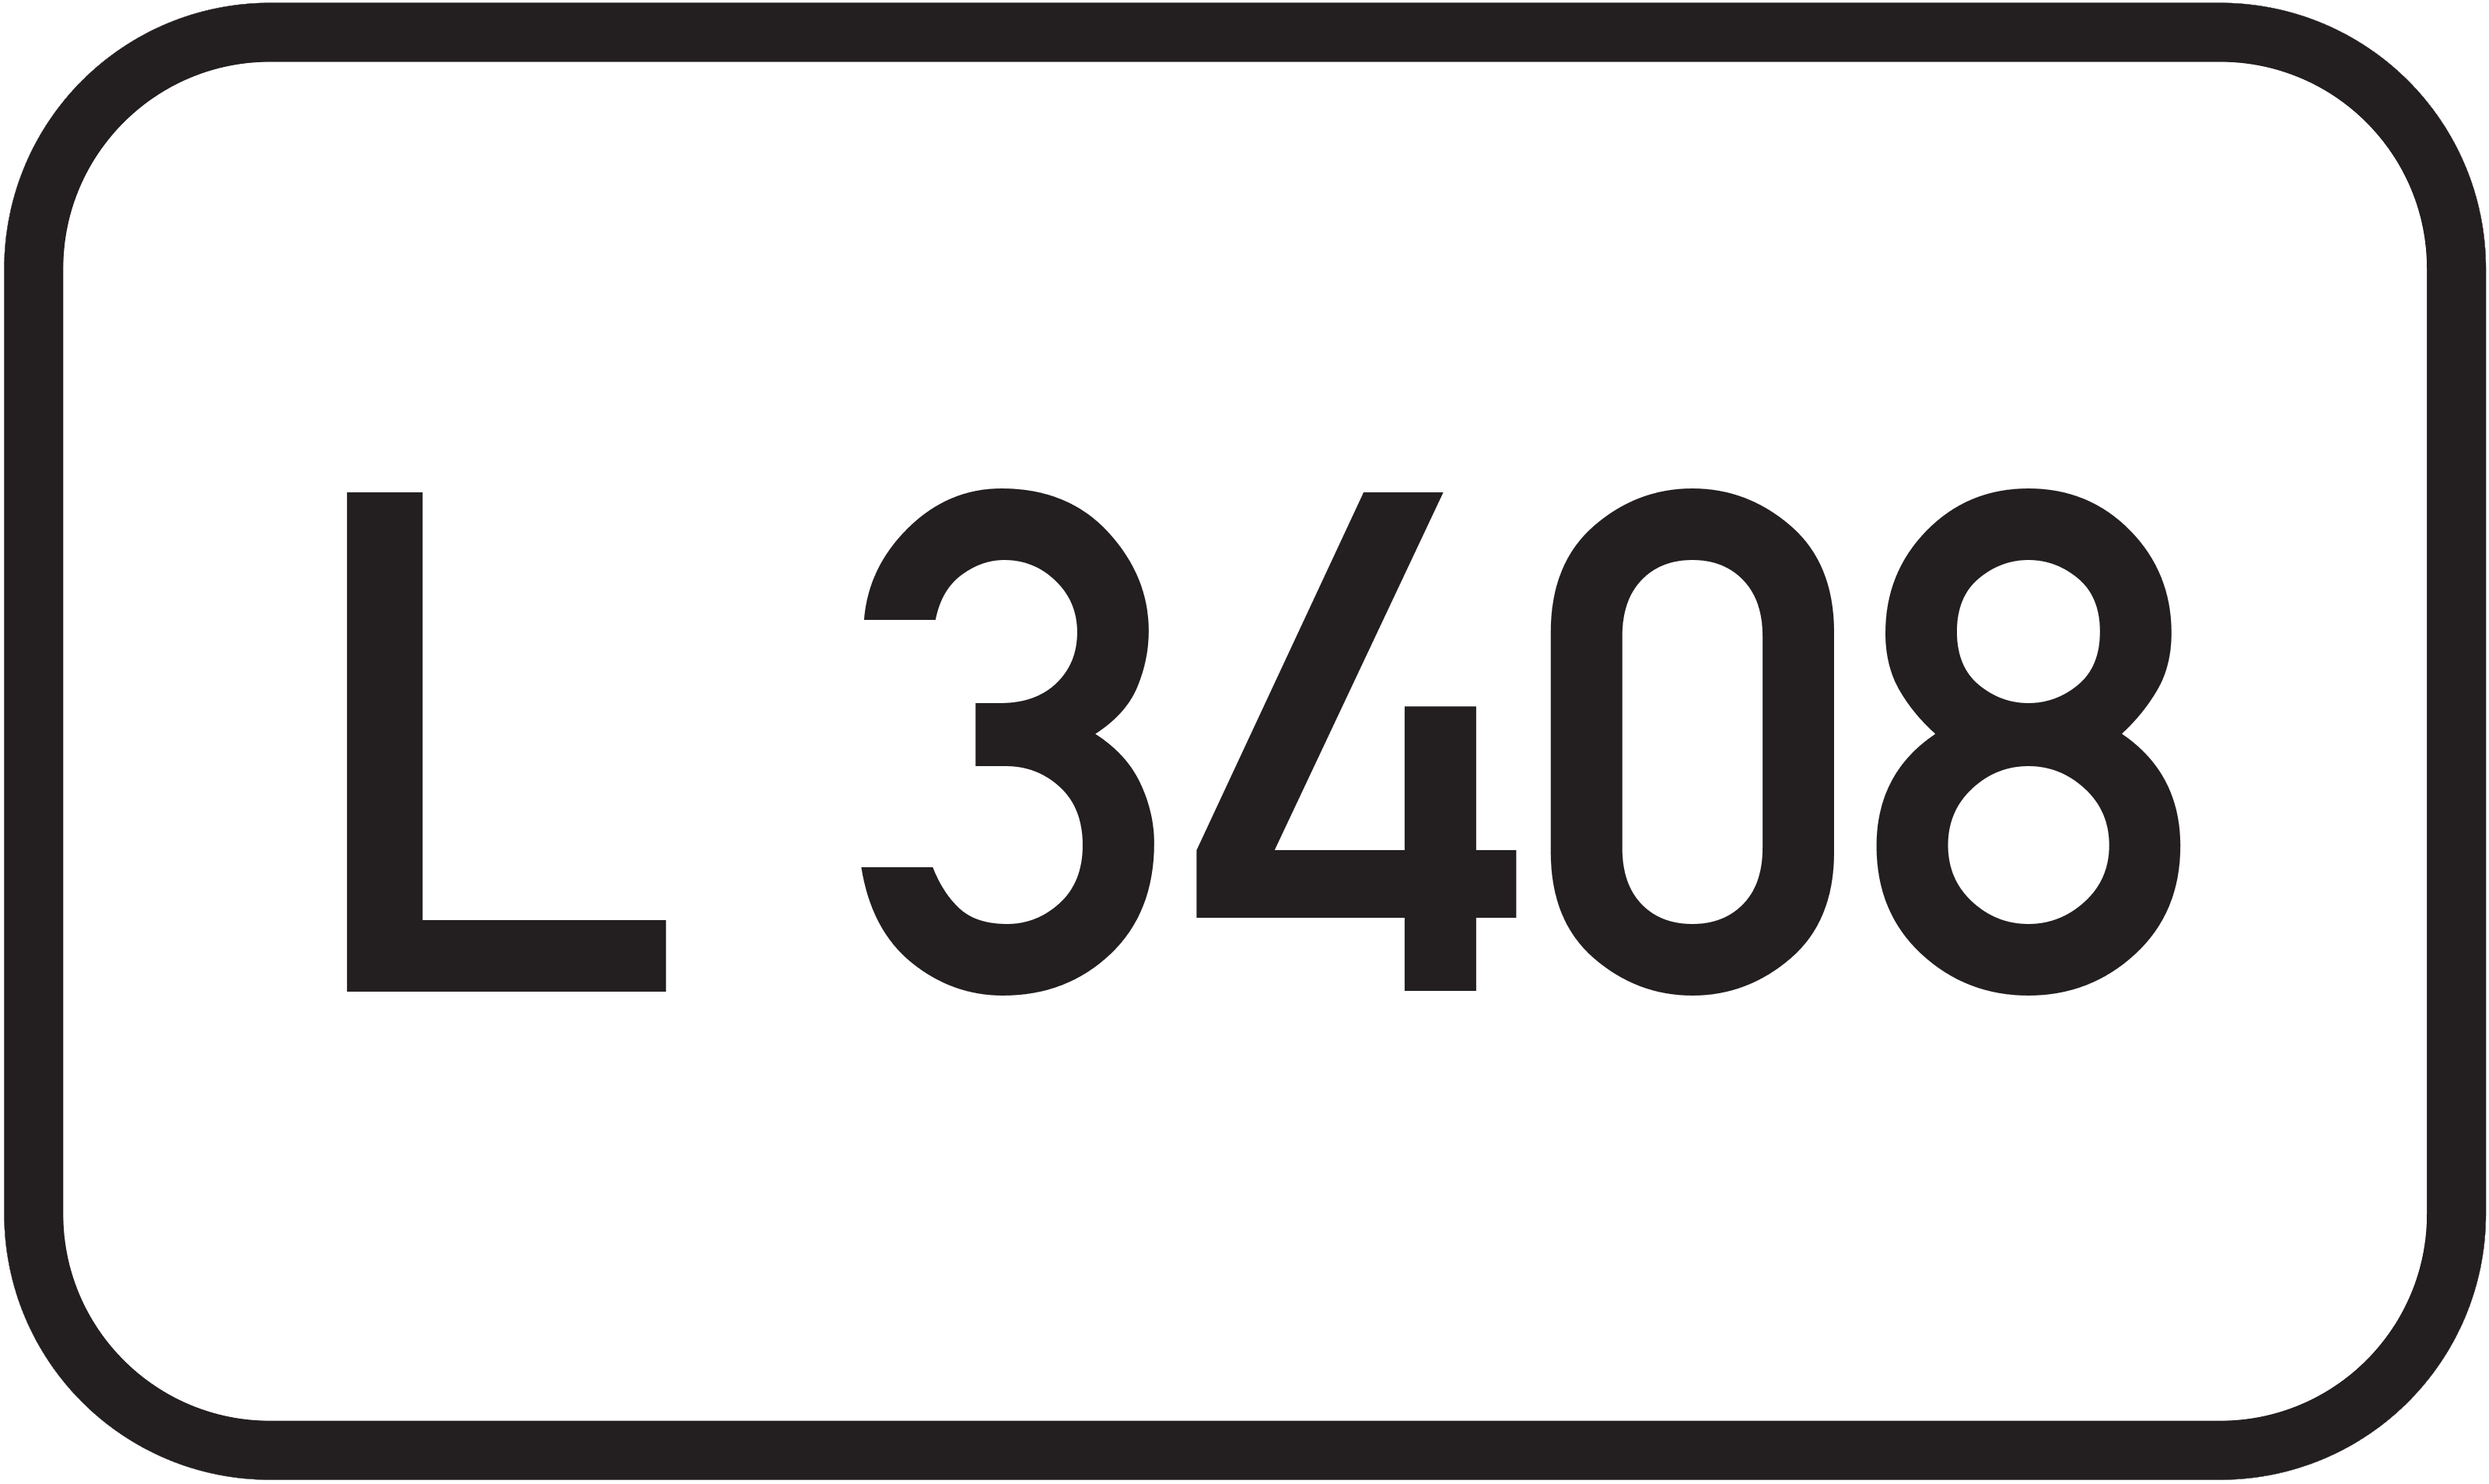 Landesstraße L 3408